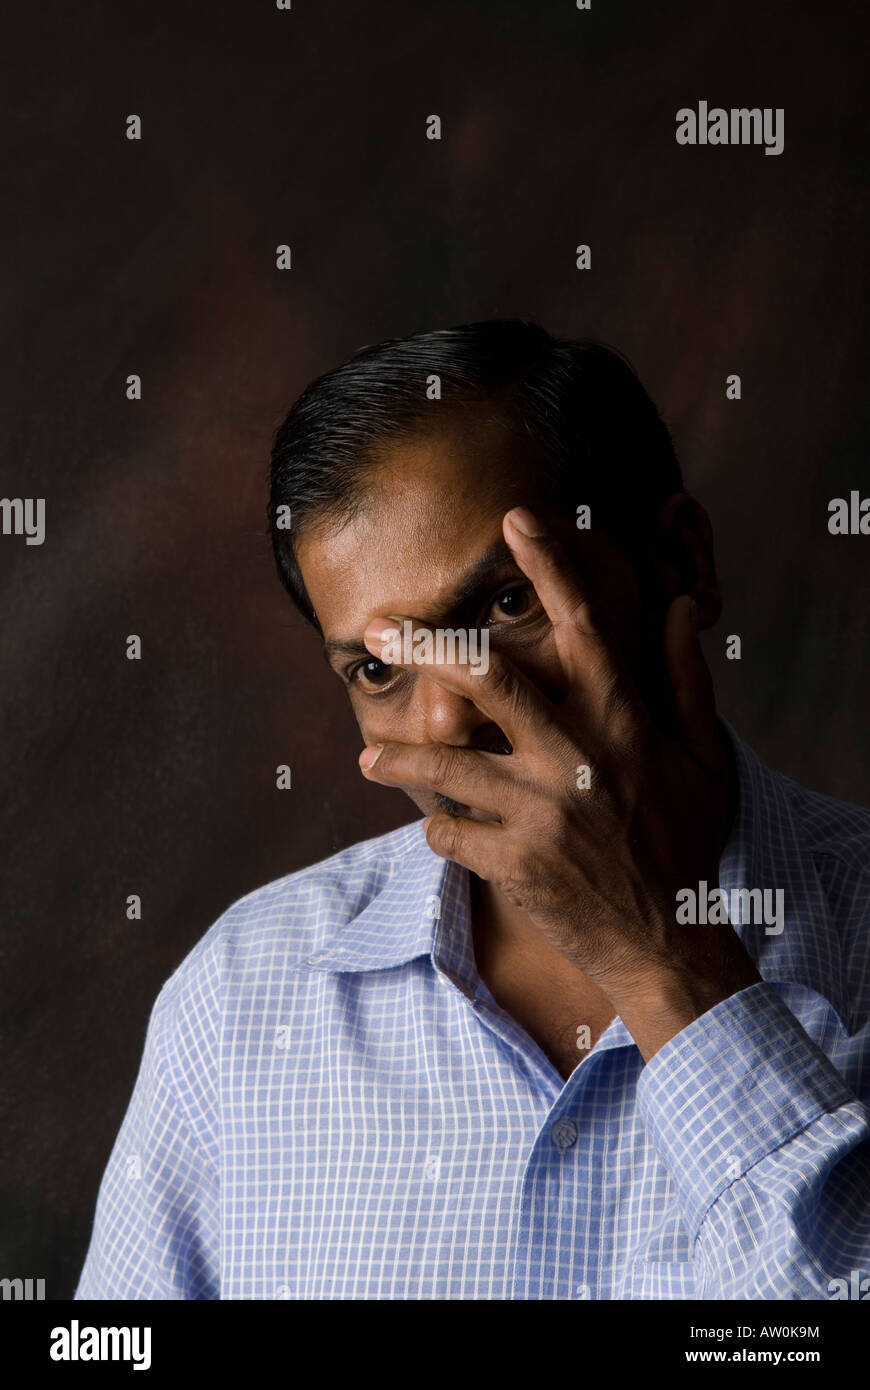 Indian man hiding face Photo Stock - Alamy